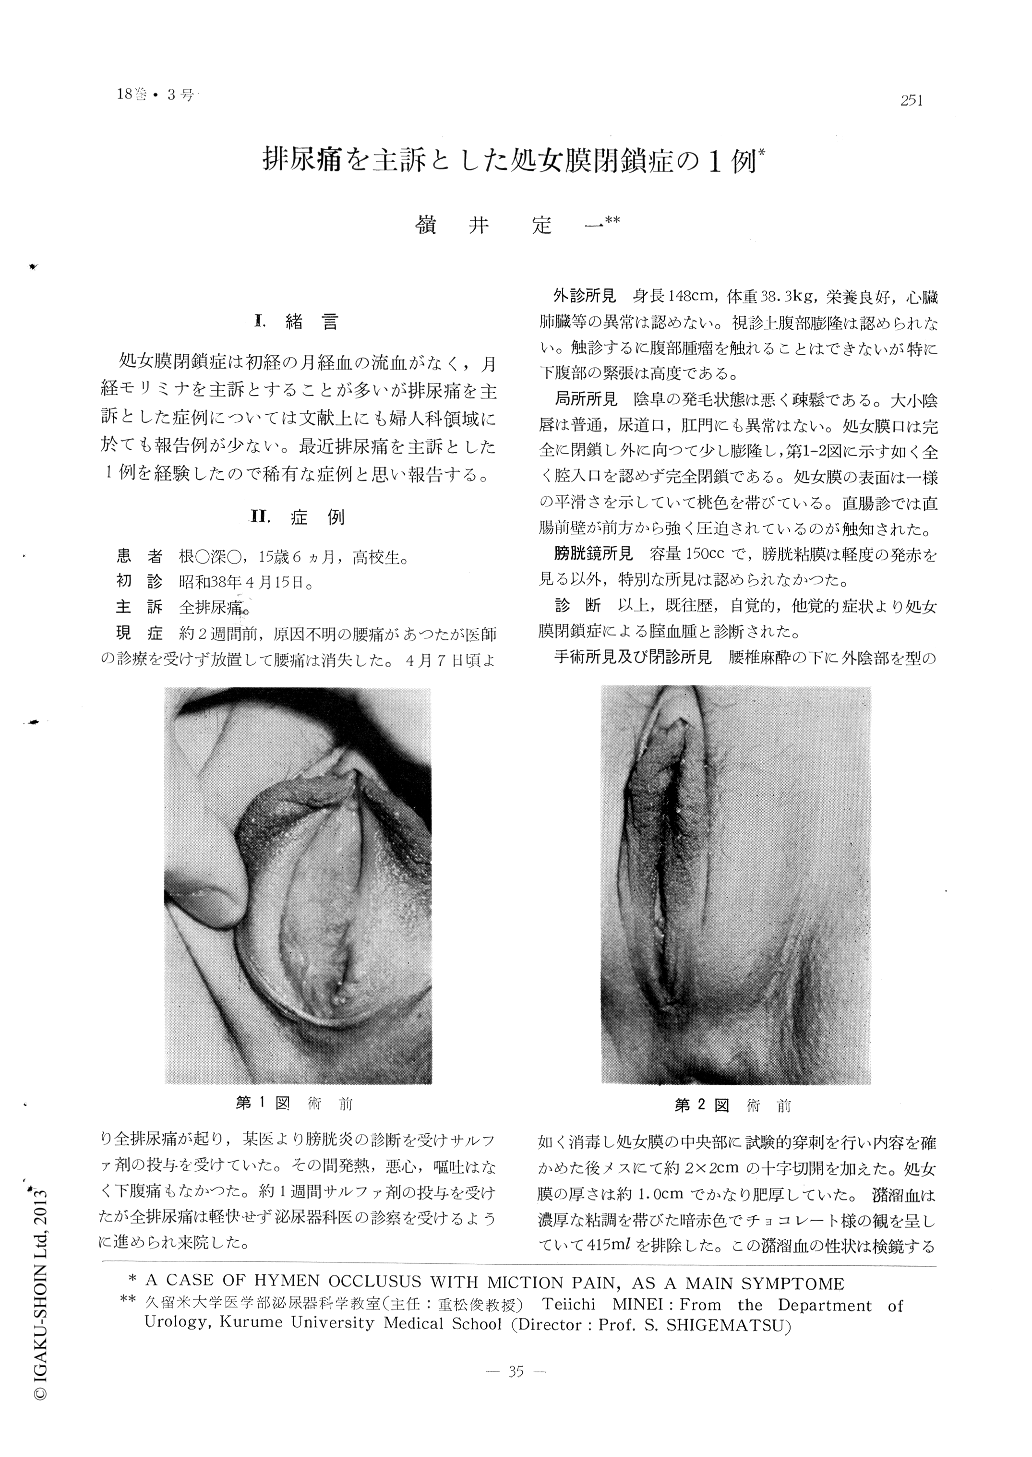 排尿痛を主訴とした処女膜閉鎖症の1例 臨床皮膚泌尿器科 18巻3号 医書 Jp